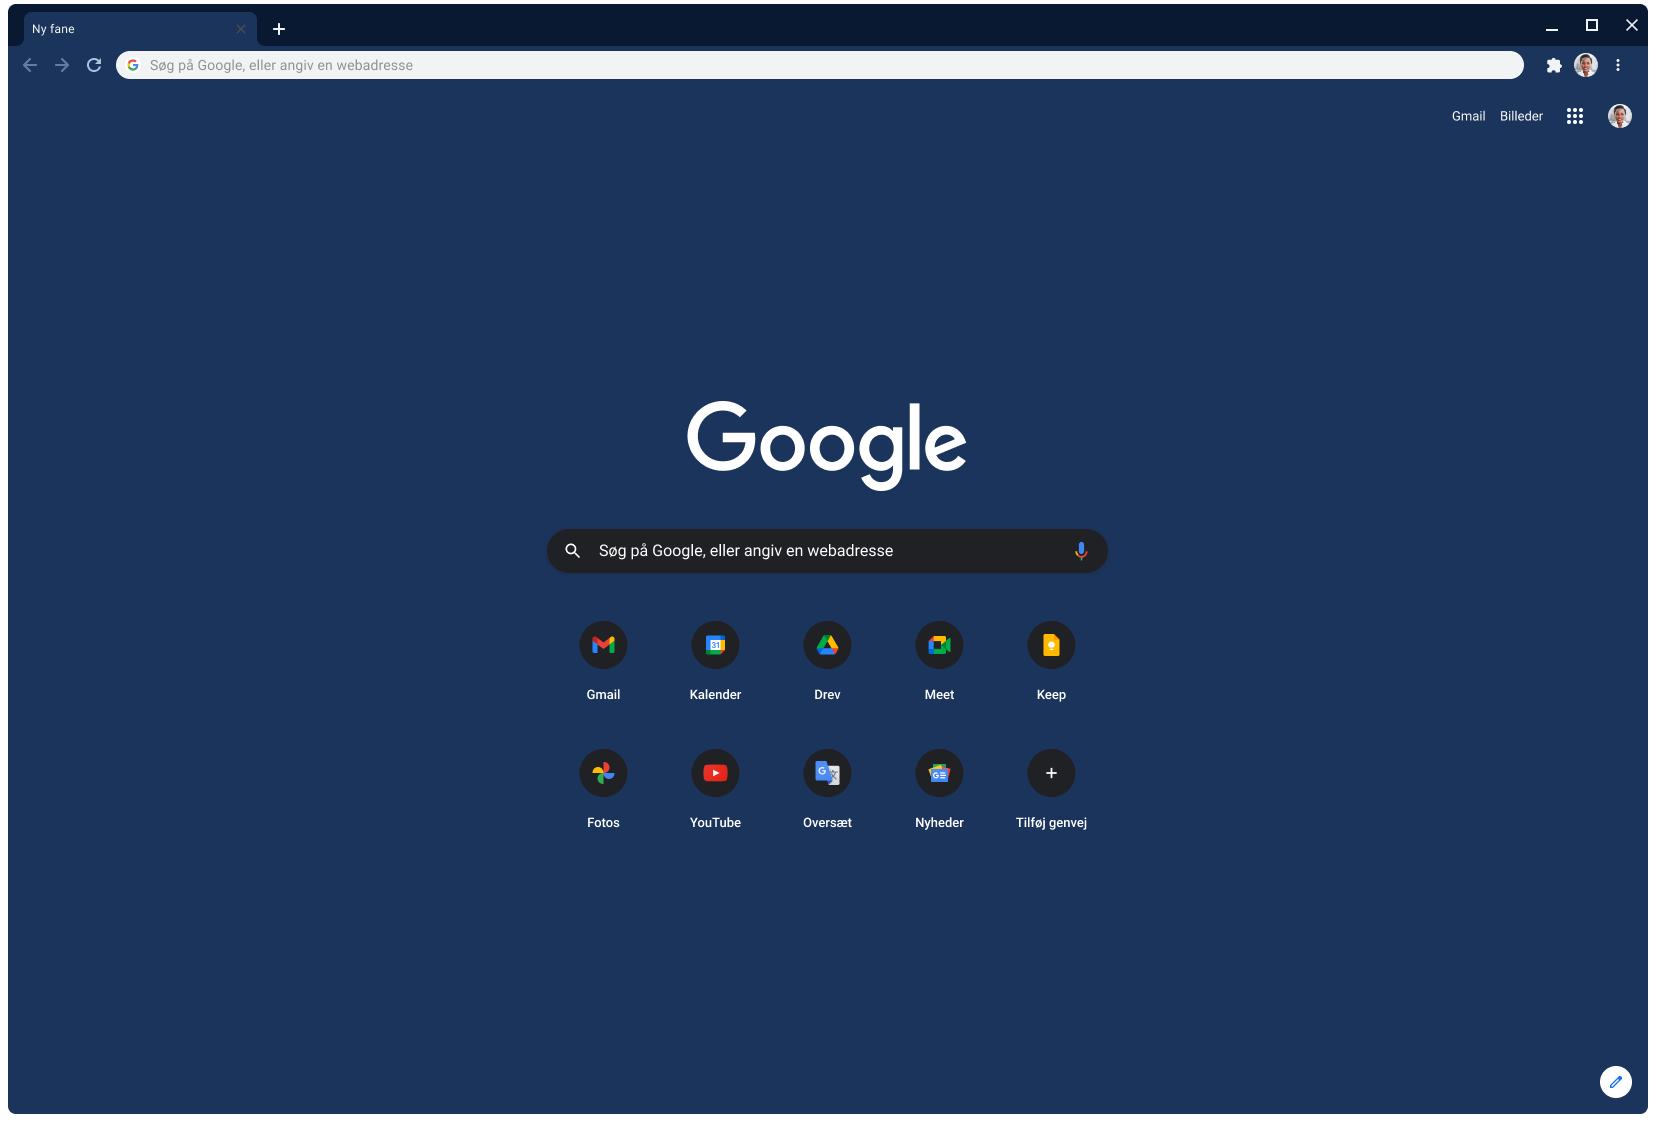 Et Chrome-browservindue, der viser Google.com med Slate-temaet.